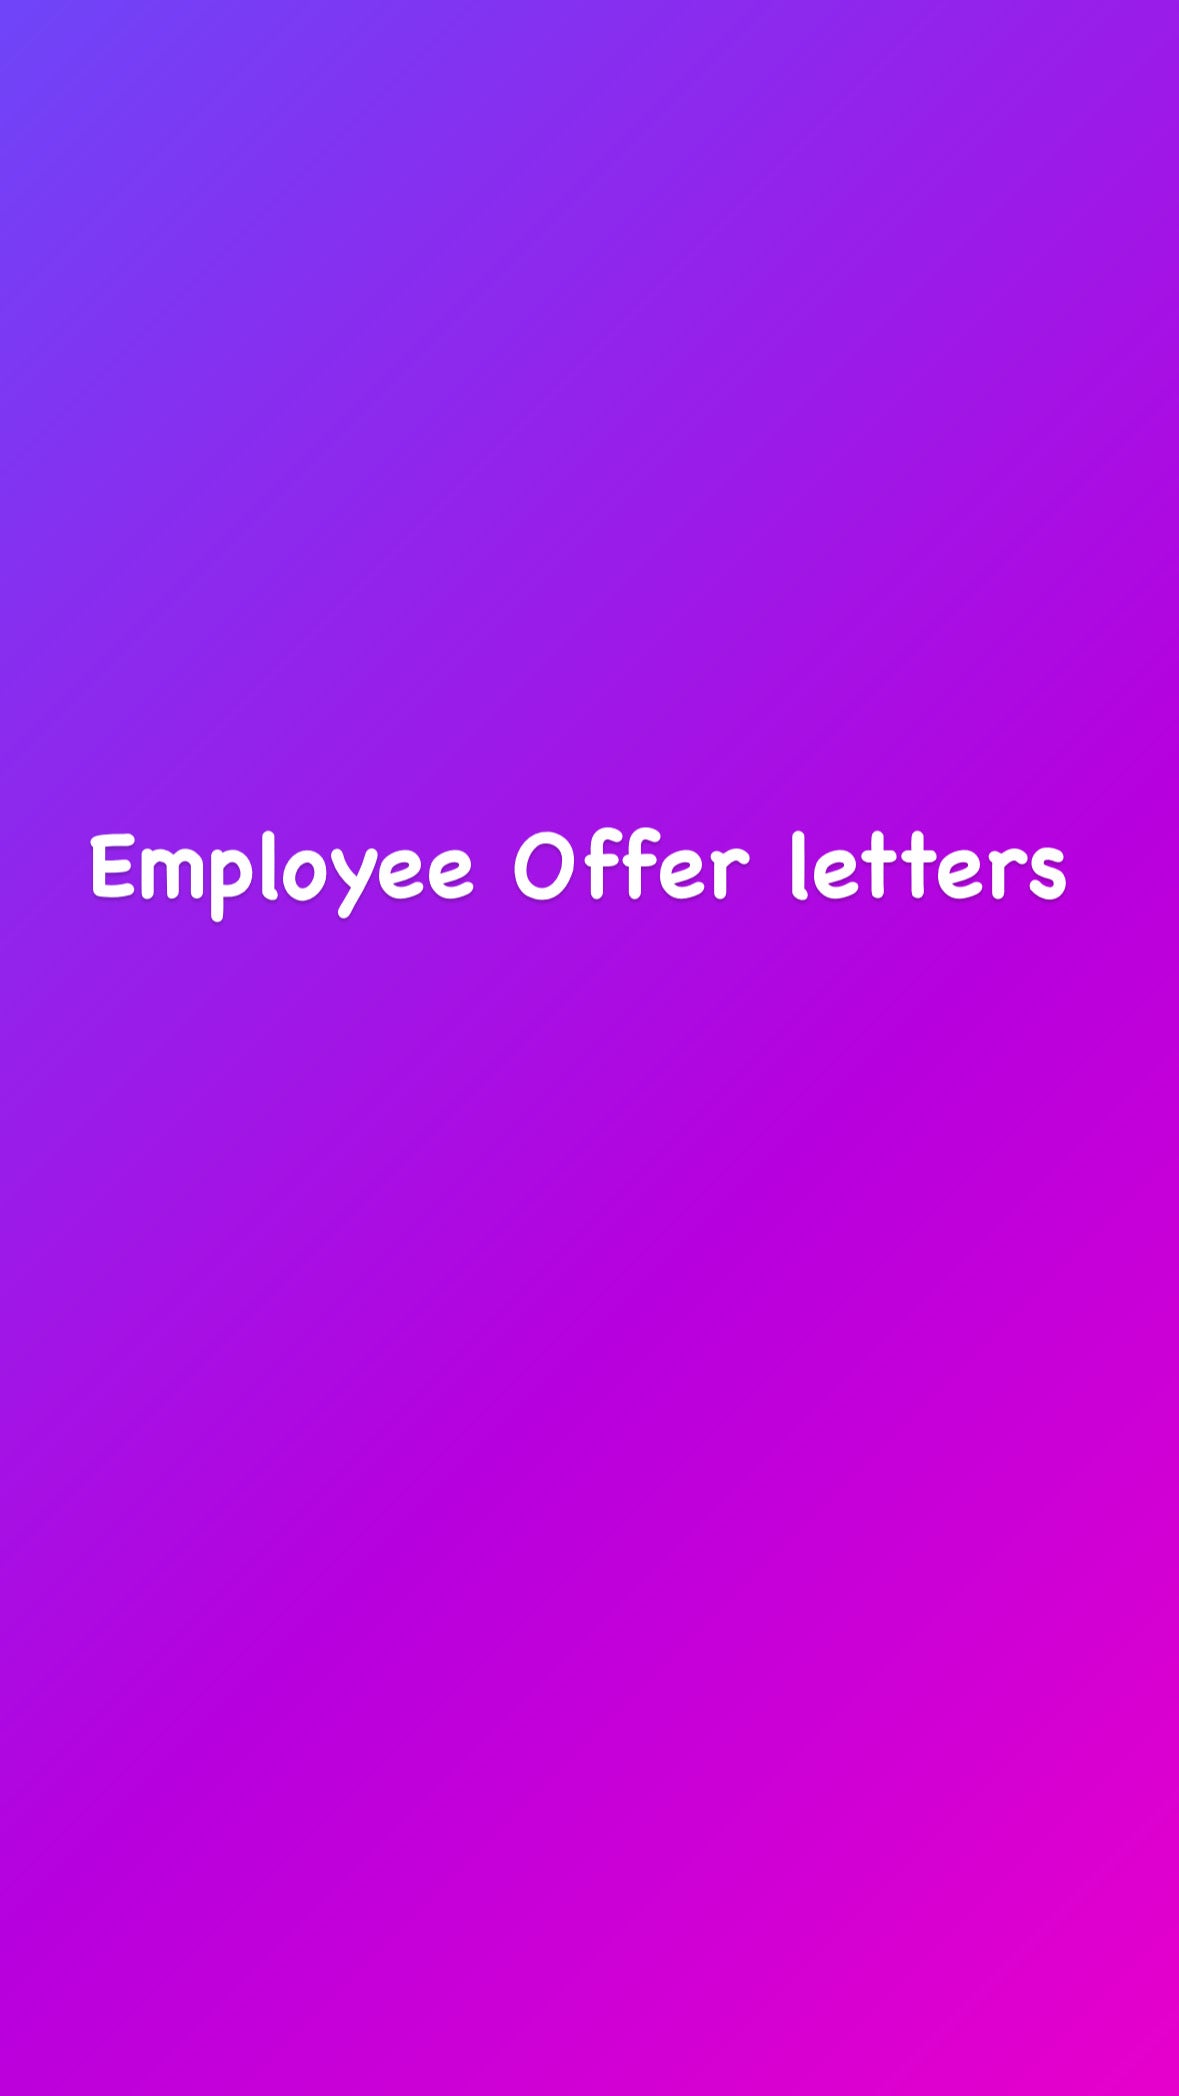 Employee Offer Letter